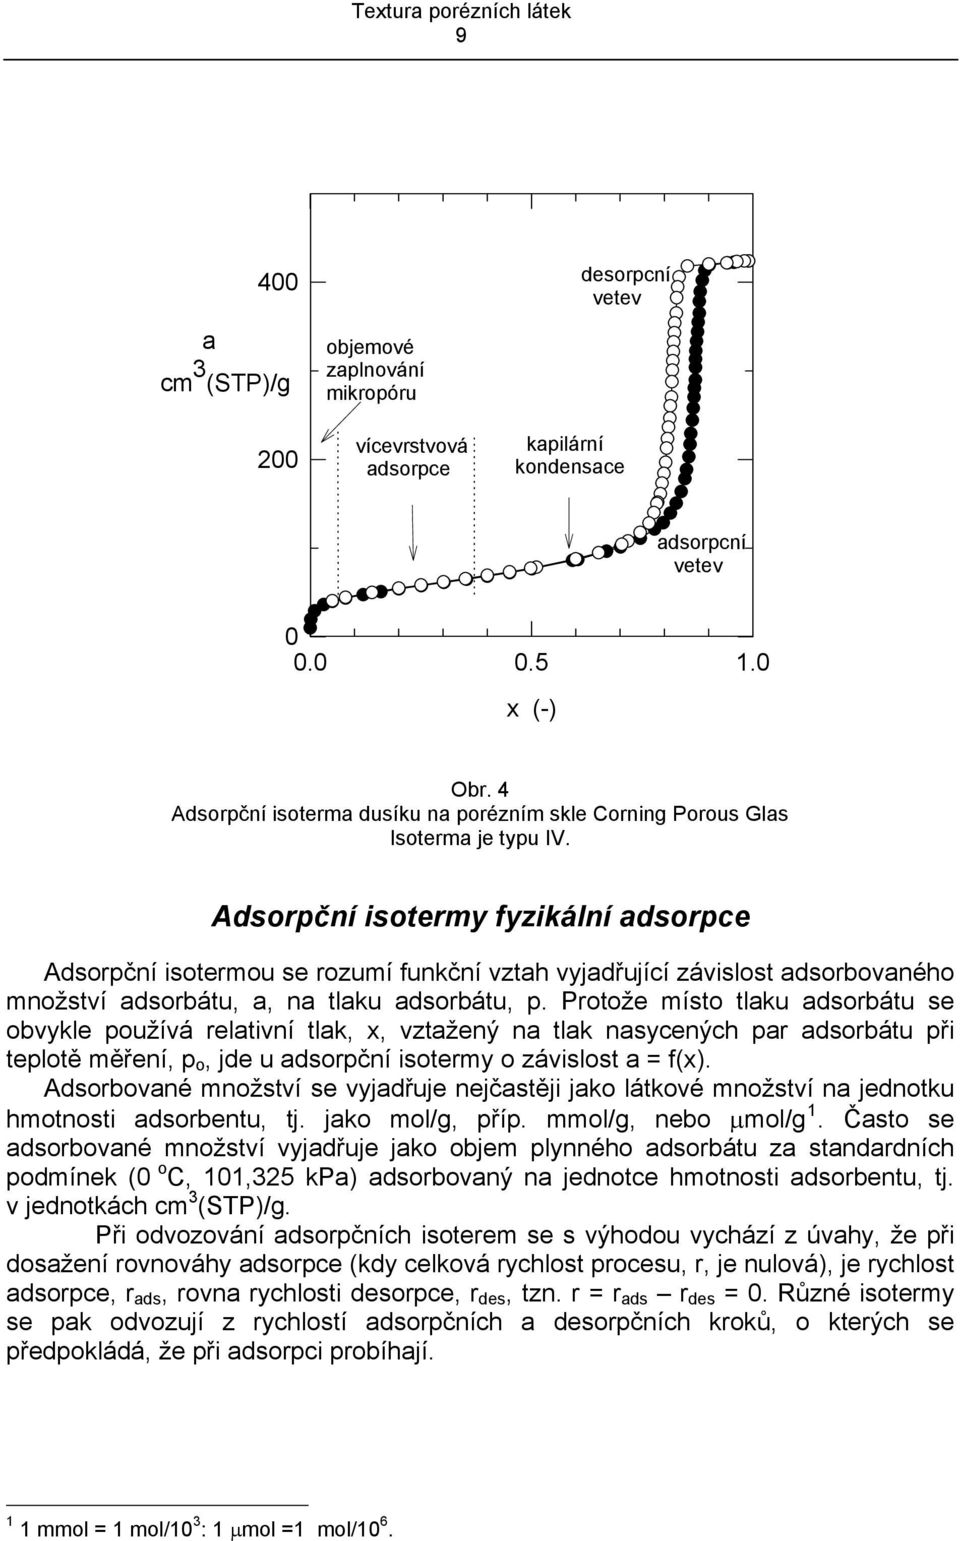 Adsorpční sotermy fyzkální adsorpce Adsorpční sotermou se rozumí funkční vztah vyjadřující závslost adsorbovaného množství adsorbátu, a, na tlaku adsorbátu, p.